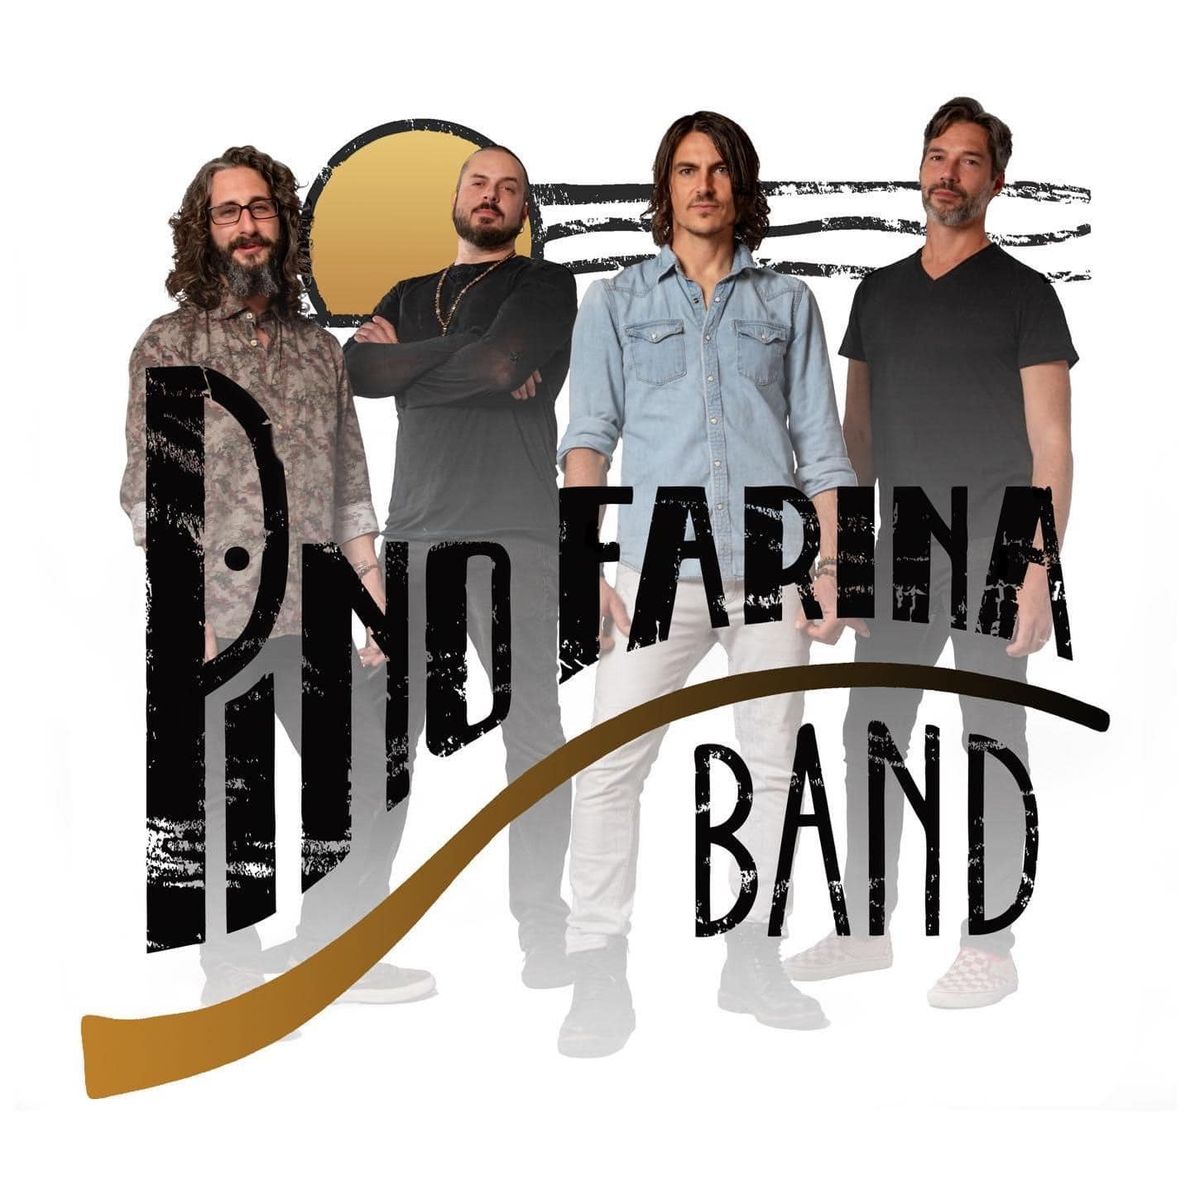 Pino Farina Band: QRY Premium Live Music Night